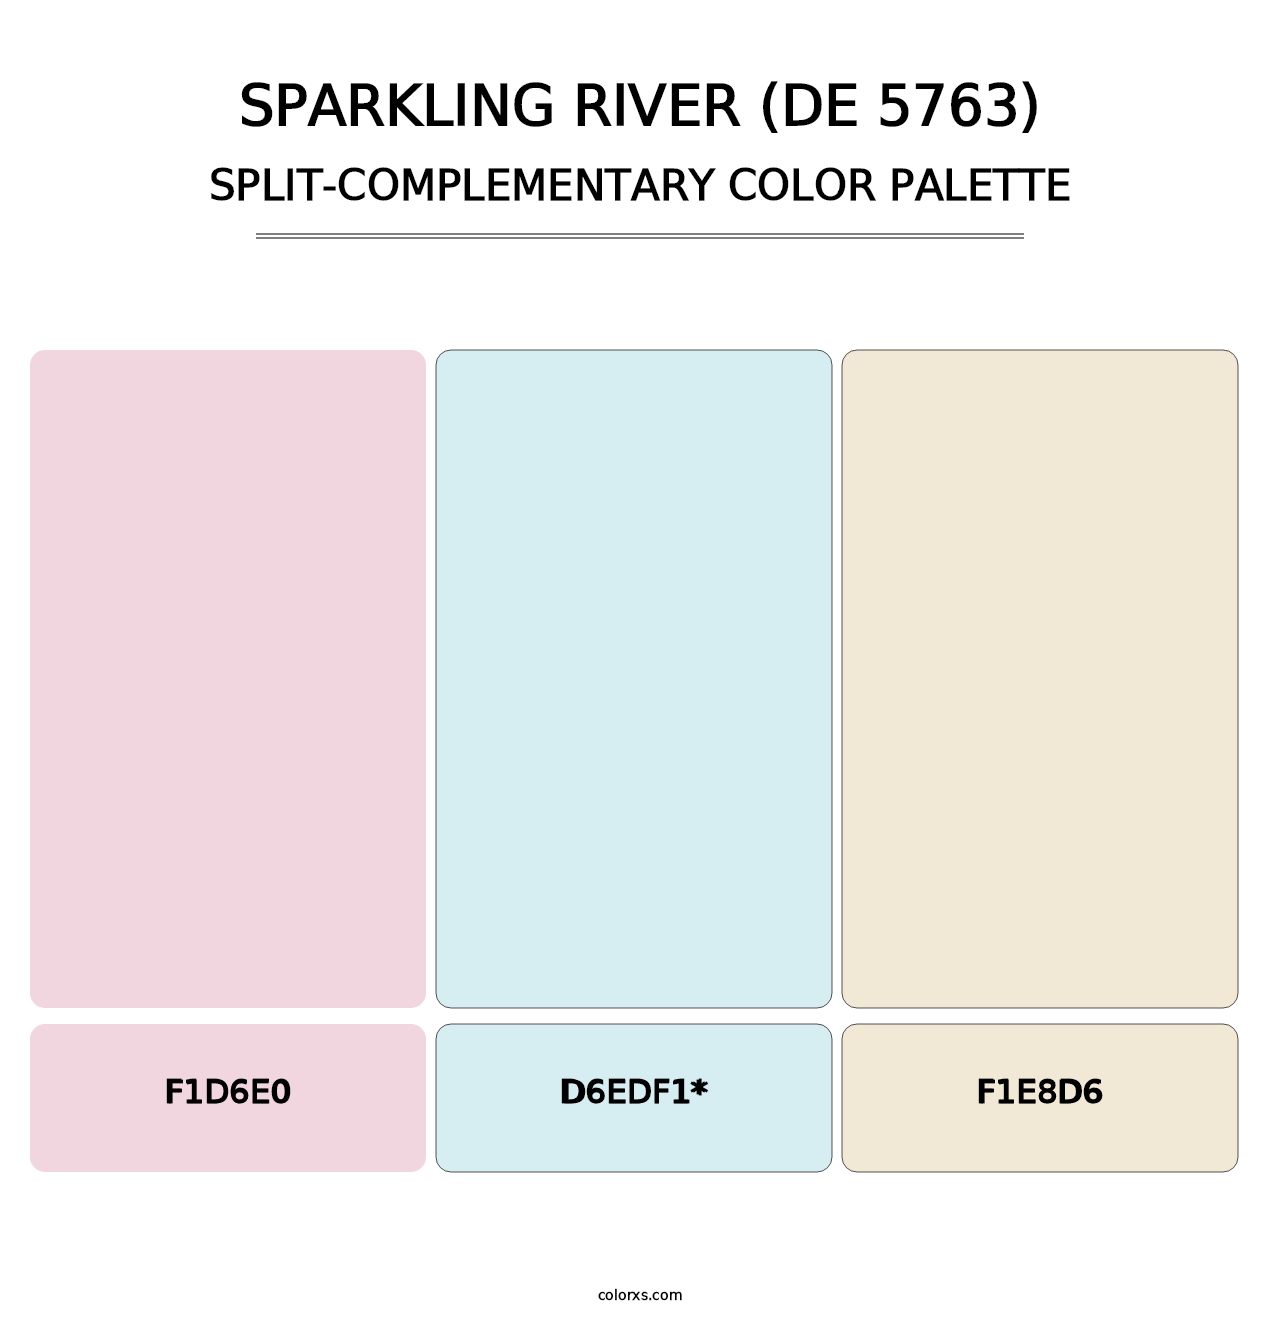 Sparkling River (DE 5763) - Split-Complementary Color Palette